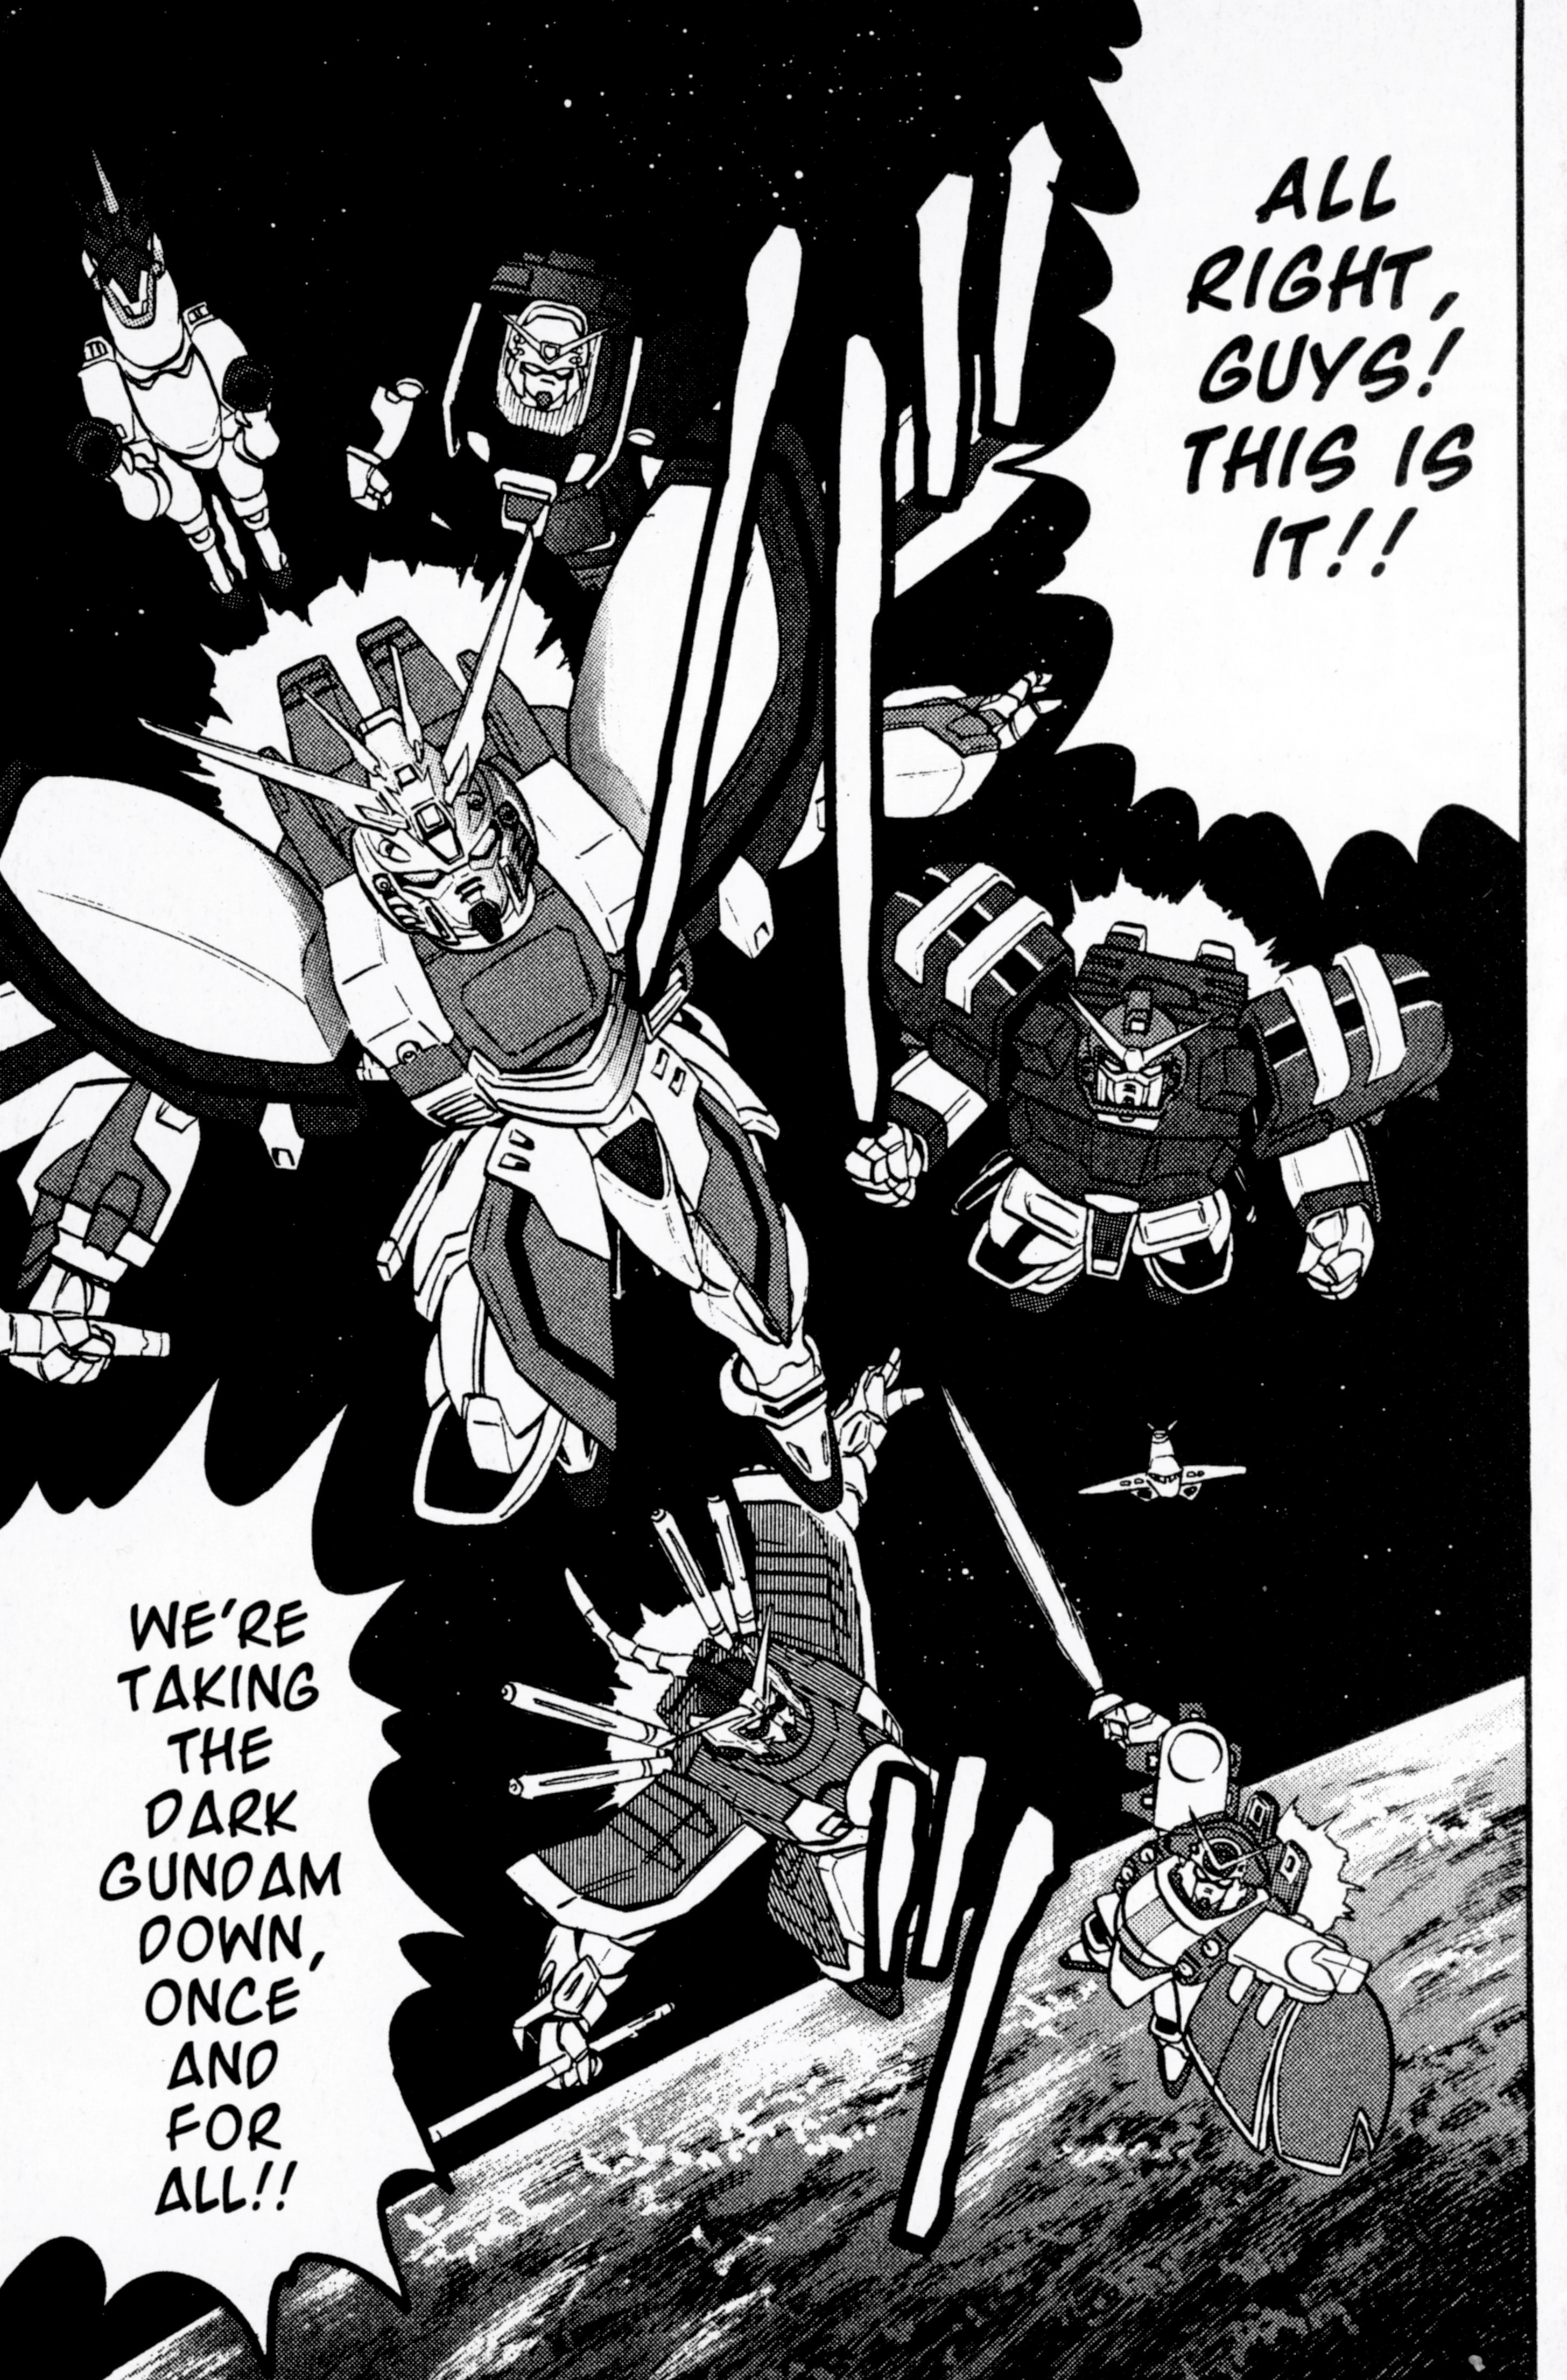 Mobile Fighter G Gundam Vol.3 Chapter 13: Battle Against The Dark Gundam - Gundam Fighters Forever - - Picture 1